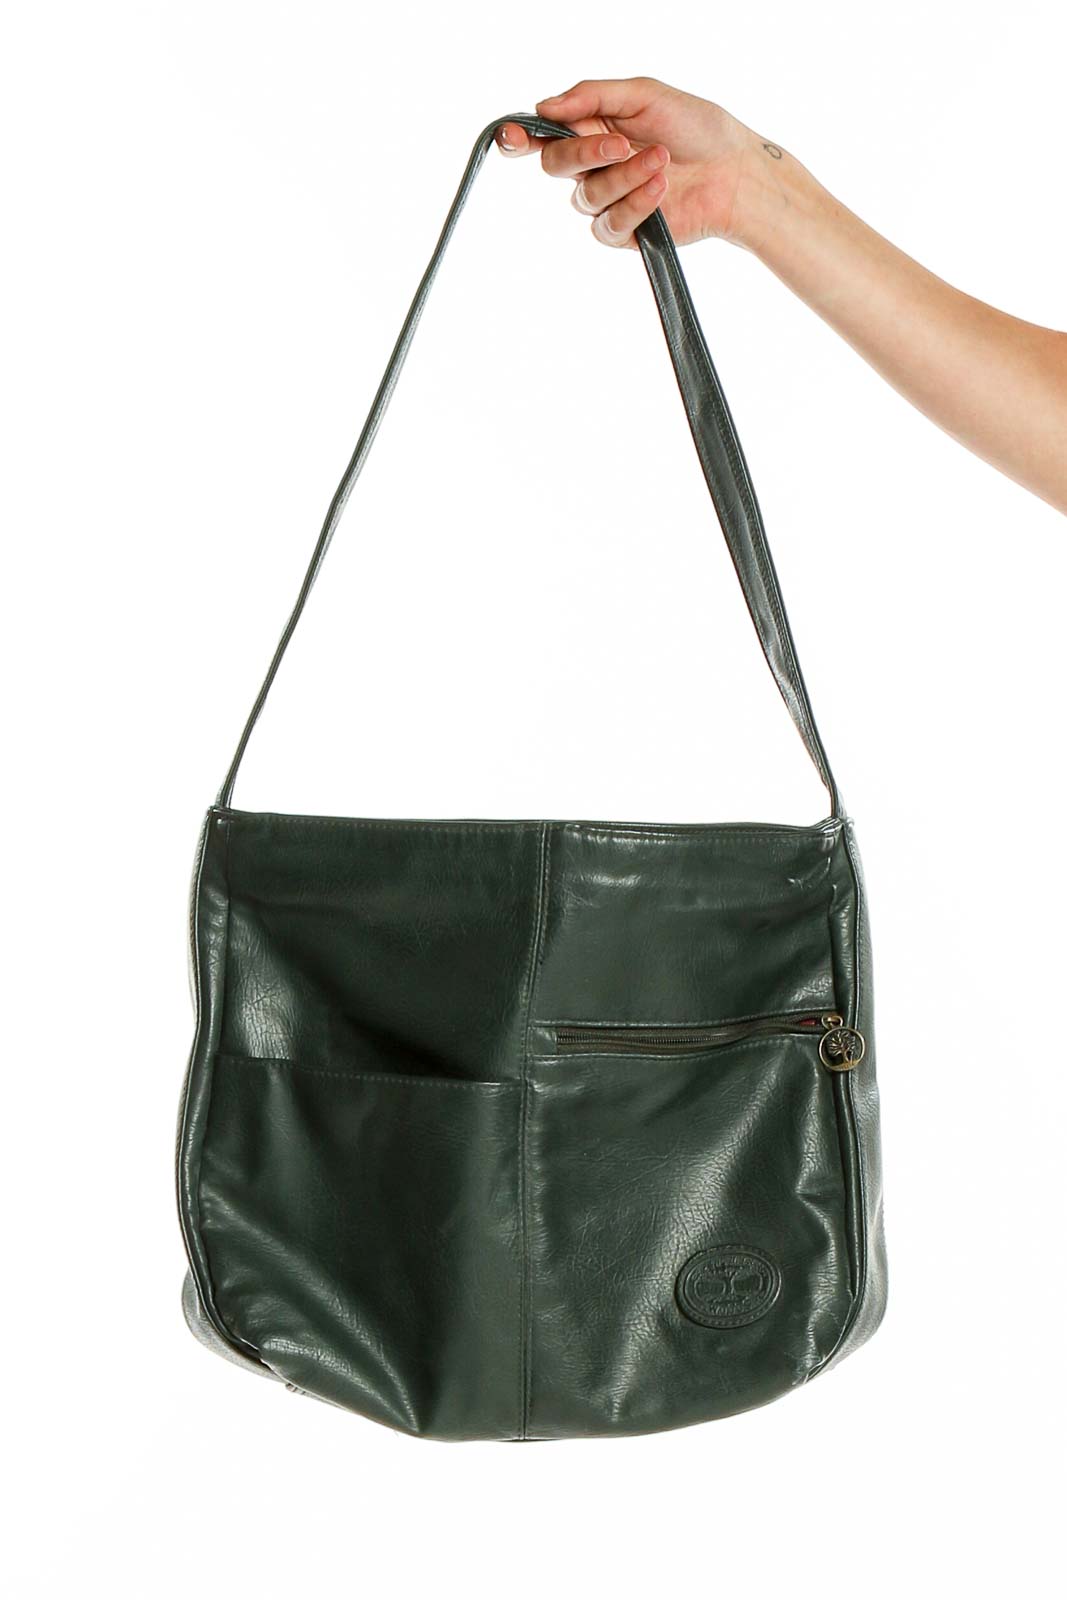 Net Shoulder Bag - Dark Green